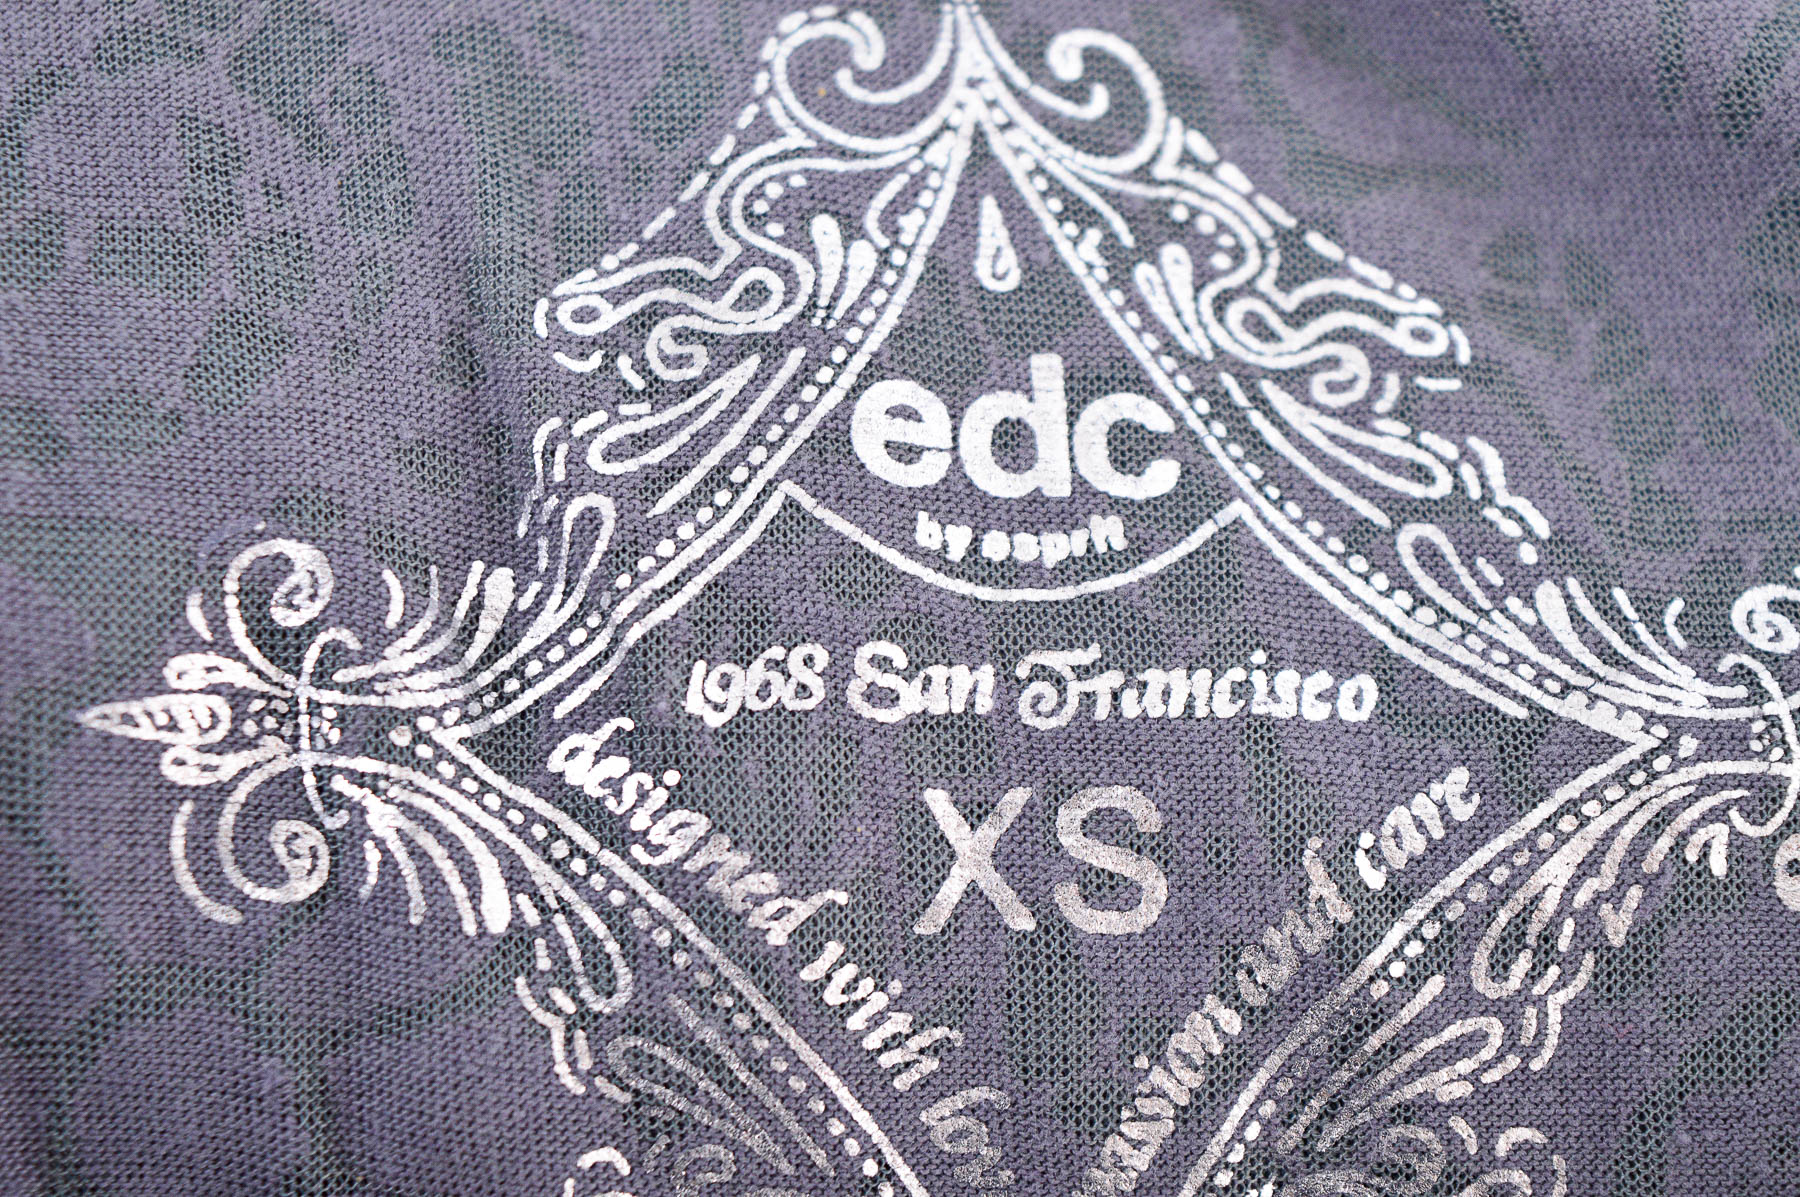 Bluza de damă - Edc - 2